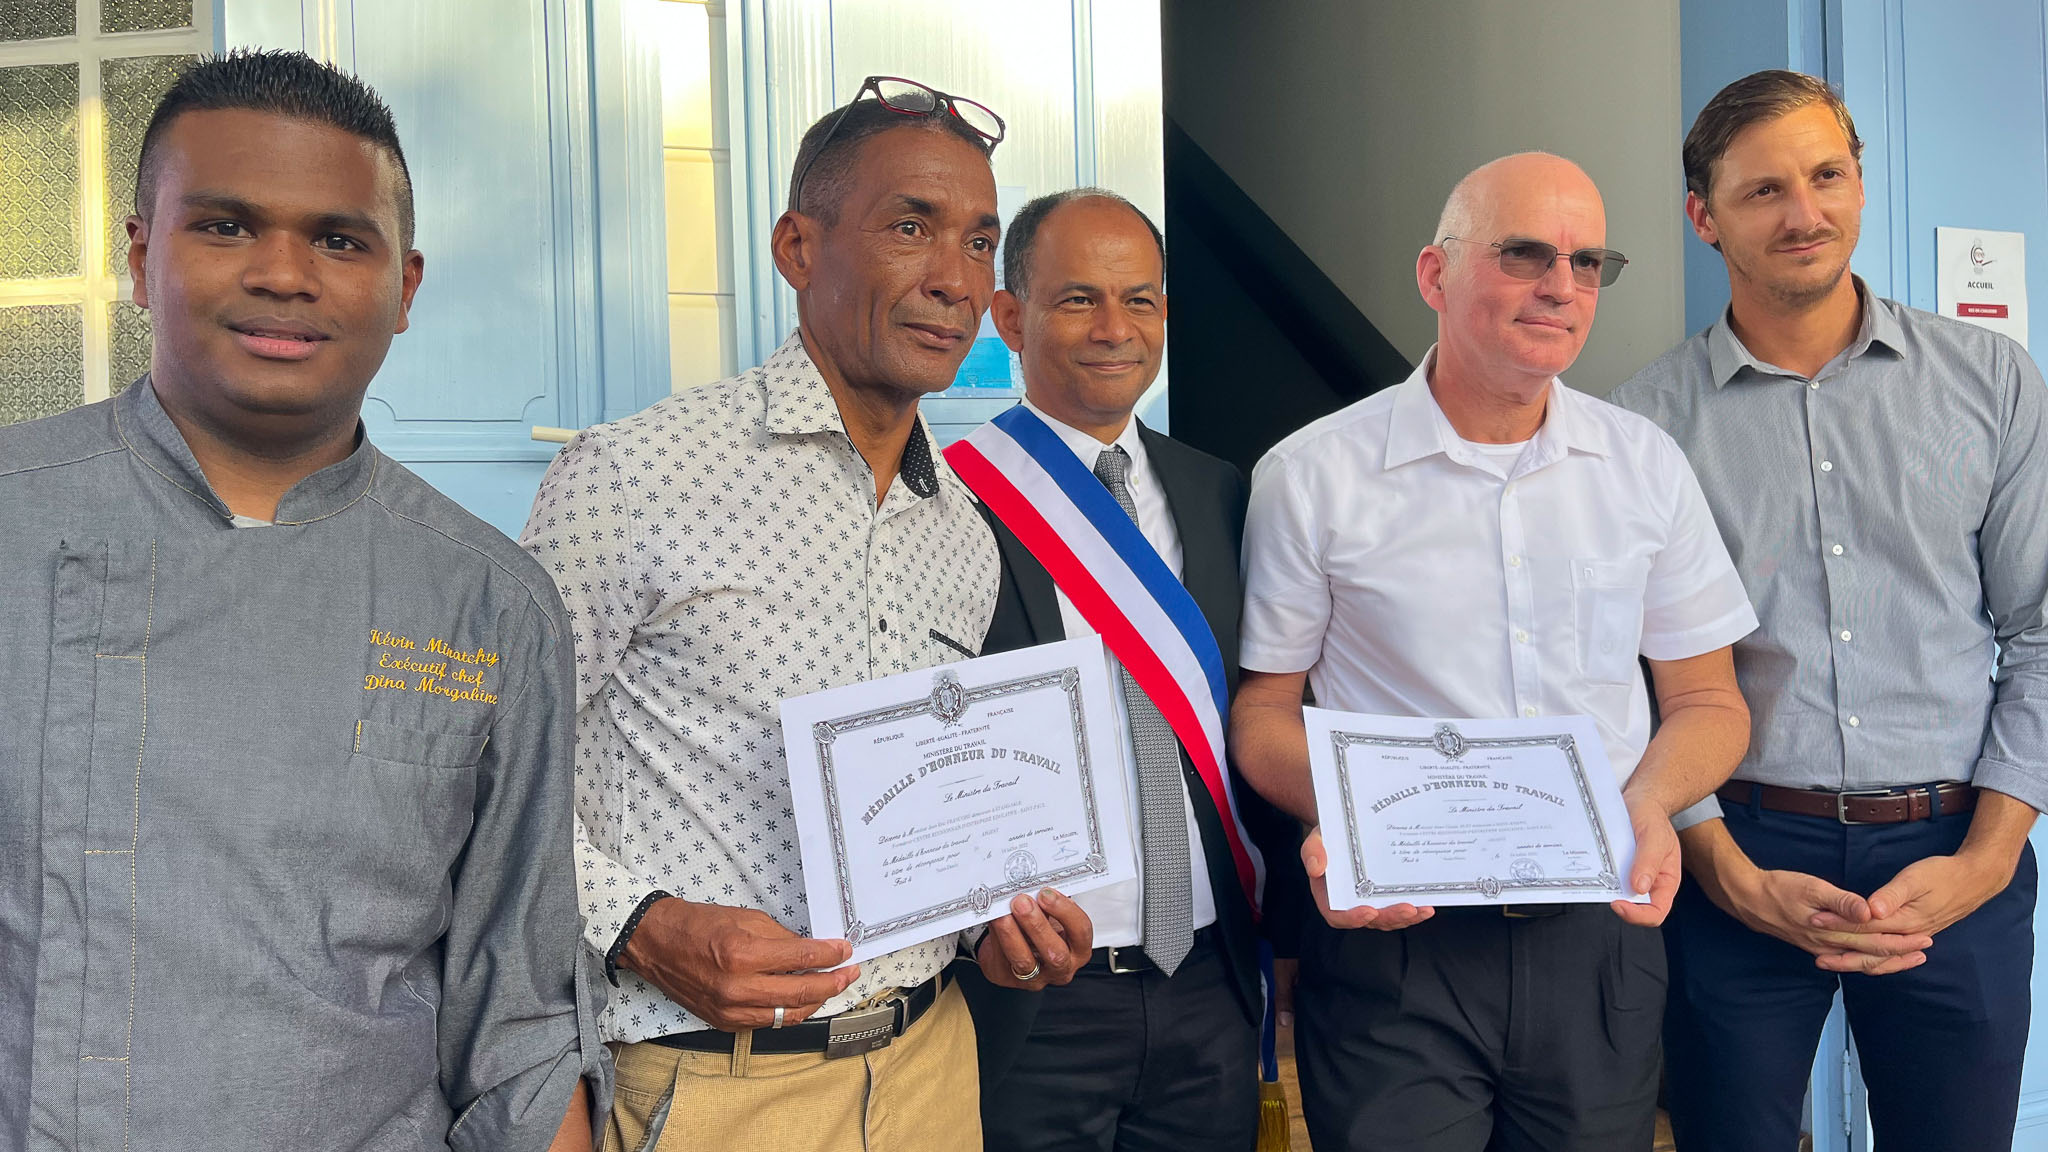 Médailles d'honneur du travail pour les formateurs Eric Françoise et Henri Huet